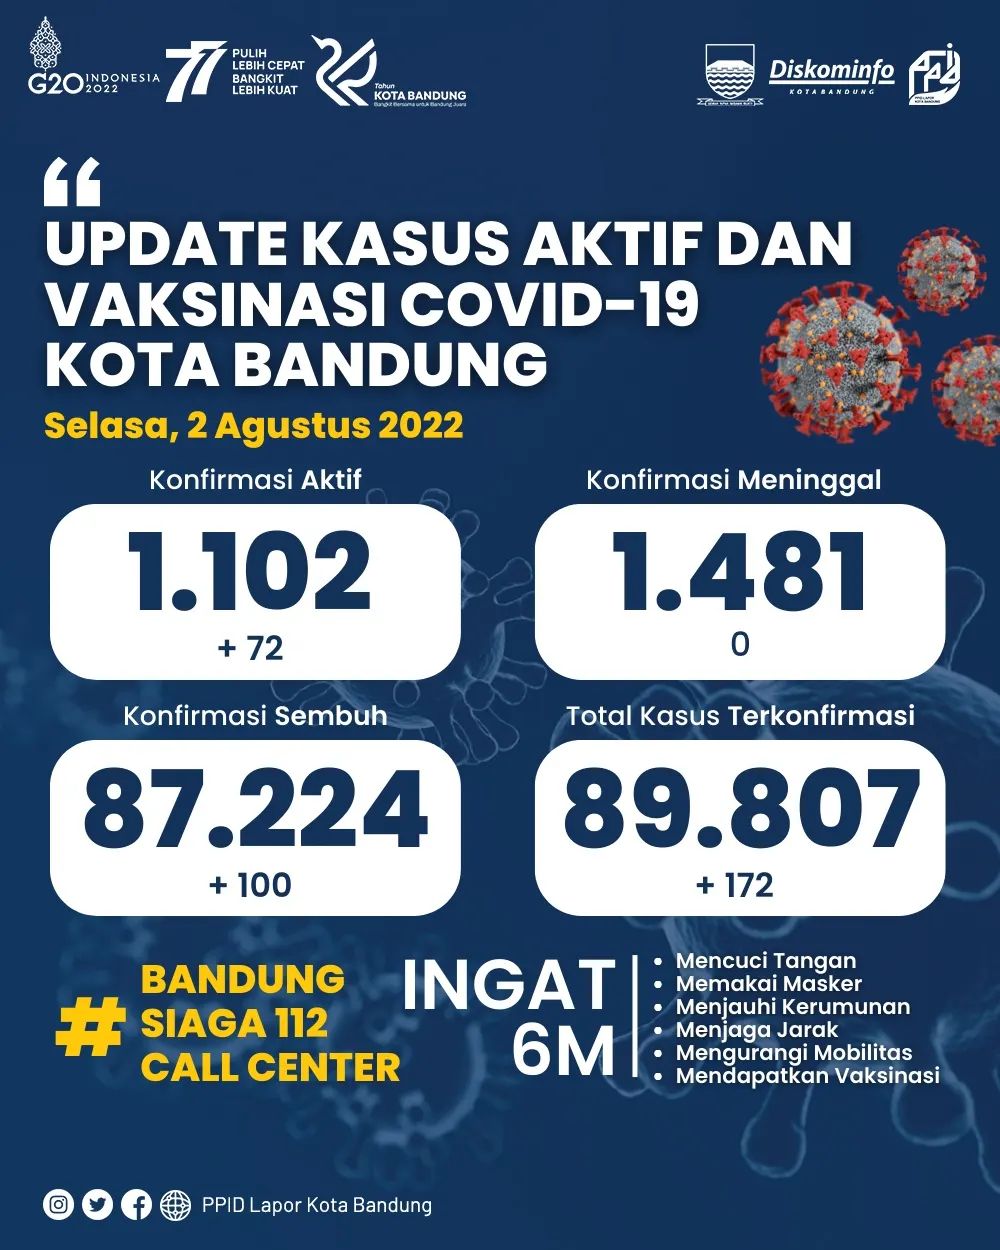 UPDATE STATISTIK COVID-19 DI KOTA BANDUNG PER TANGGAL 2 AGUSTUS 2022